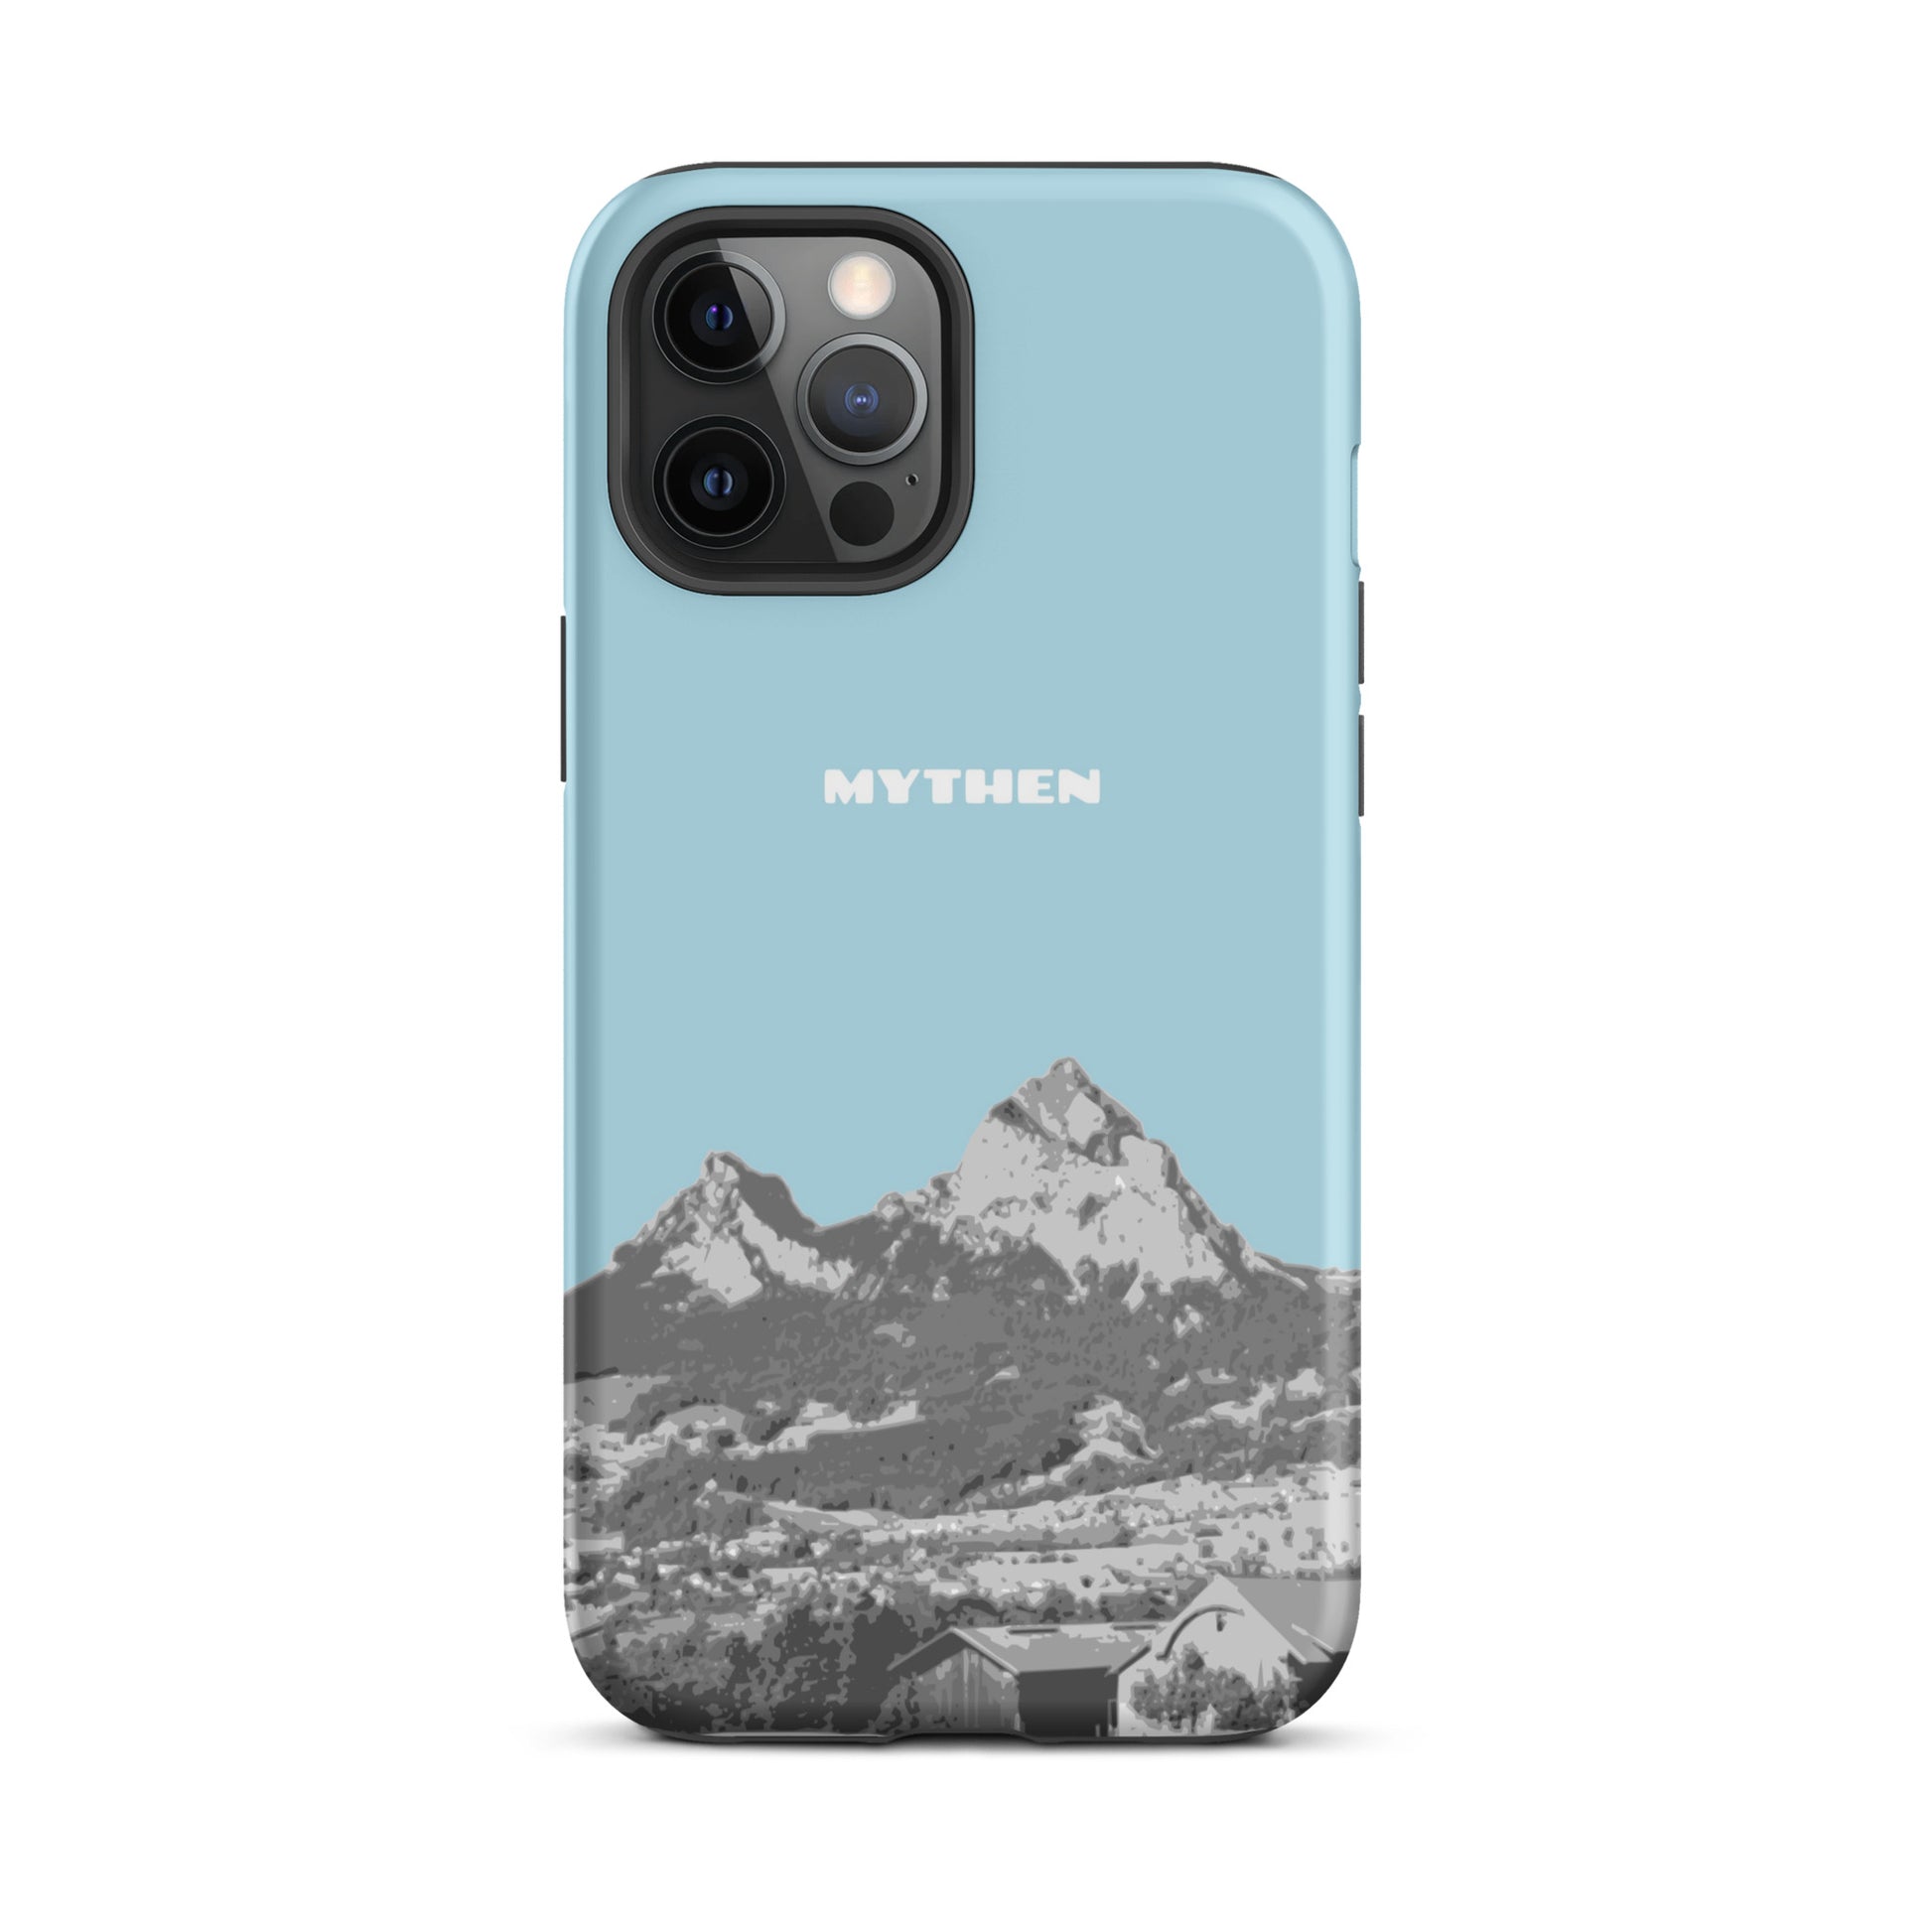 Hülle für das iPhone 12 Pro Max von Apple in der Farbe Hellblau, die den Grossen Mythen und den Kleinen Mythen bei Schwyz zeigt. 